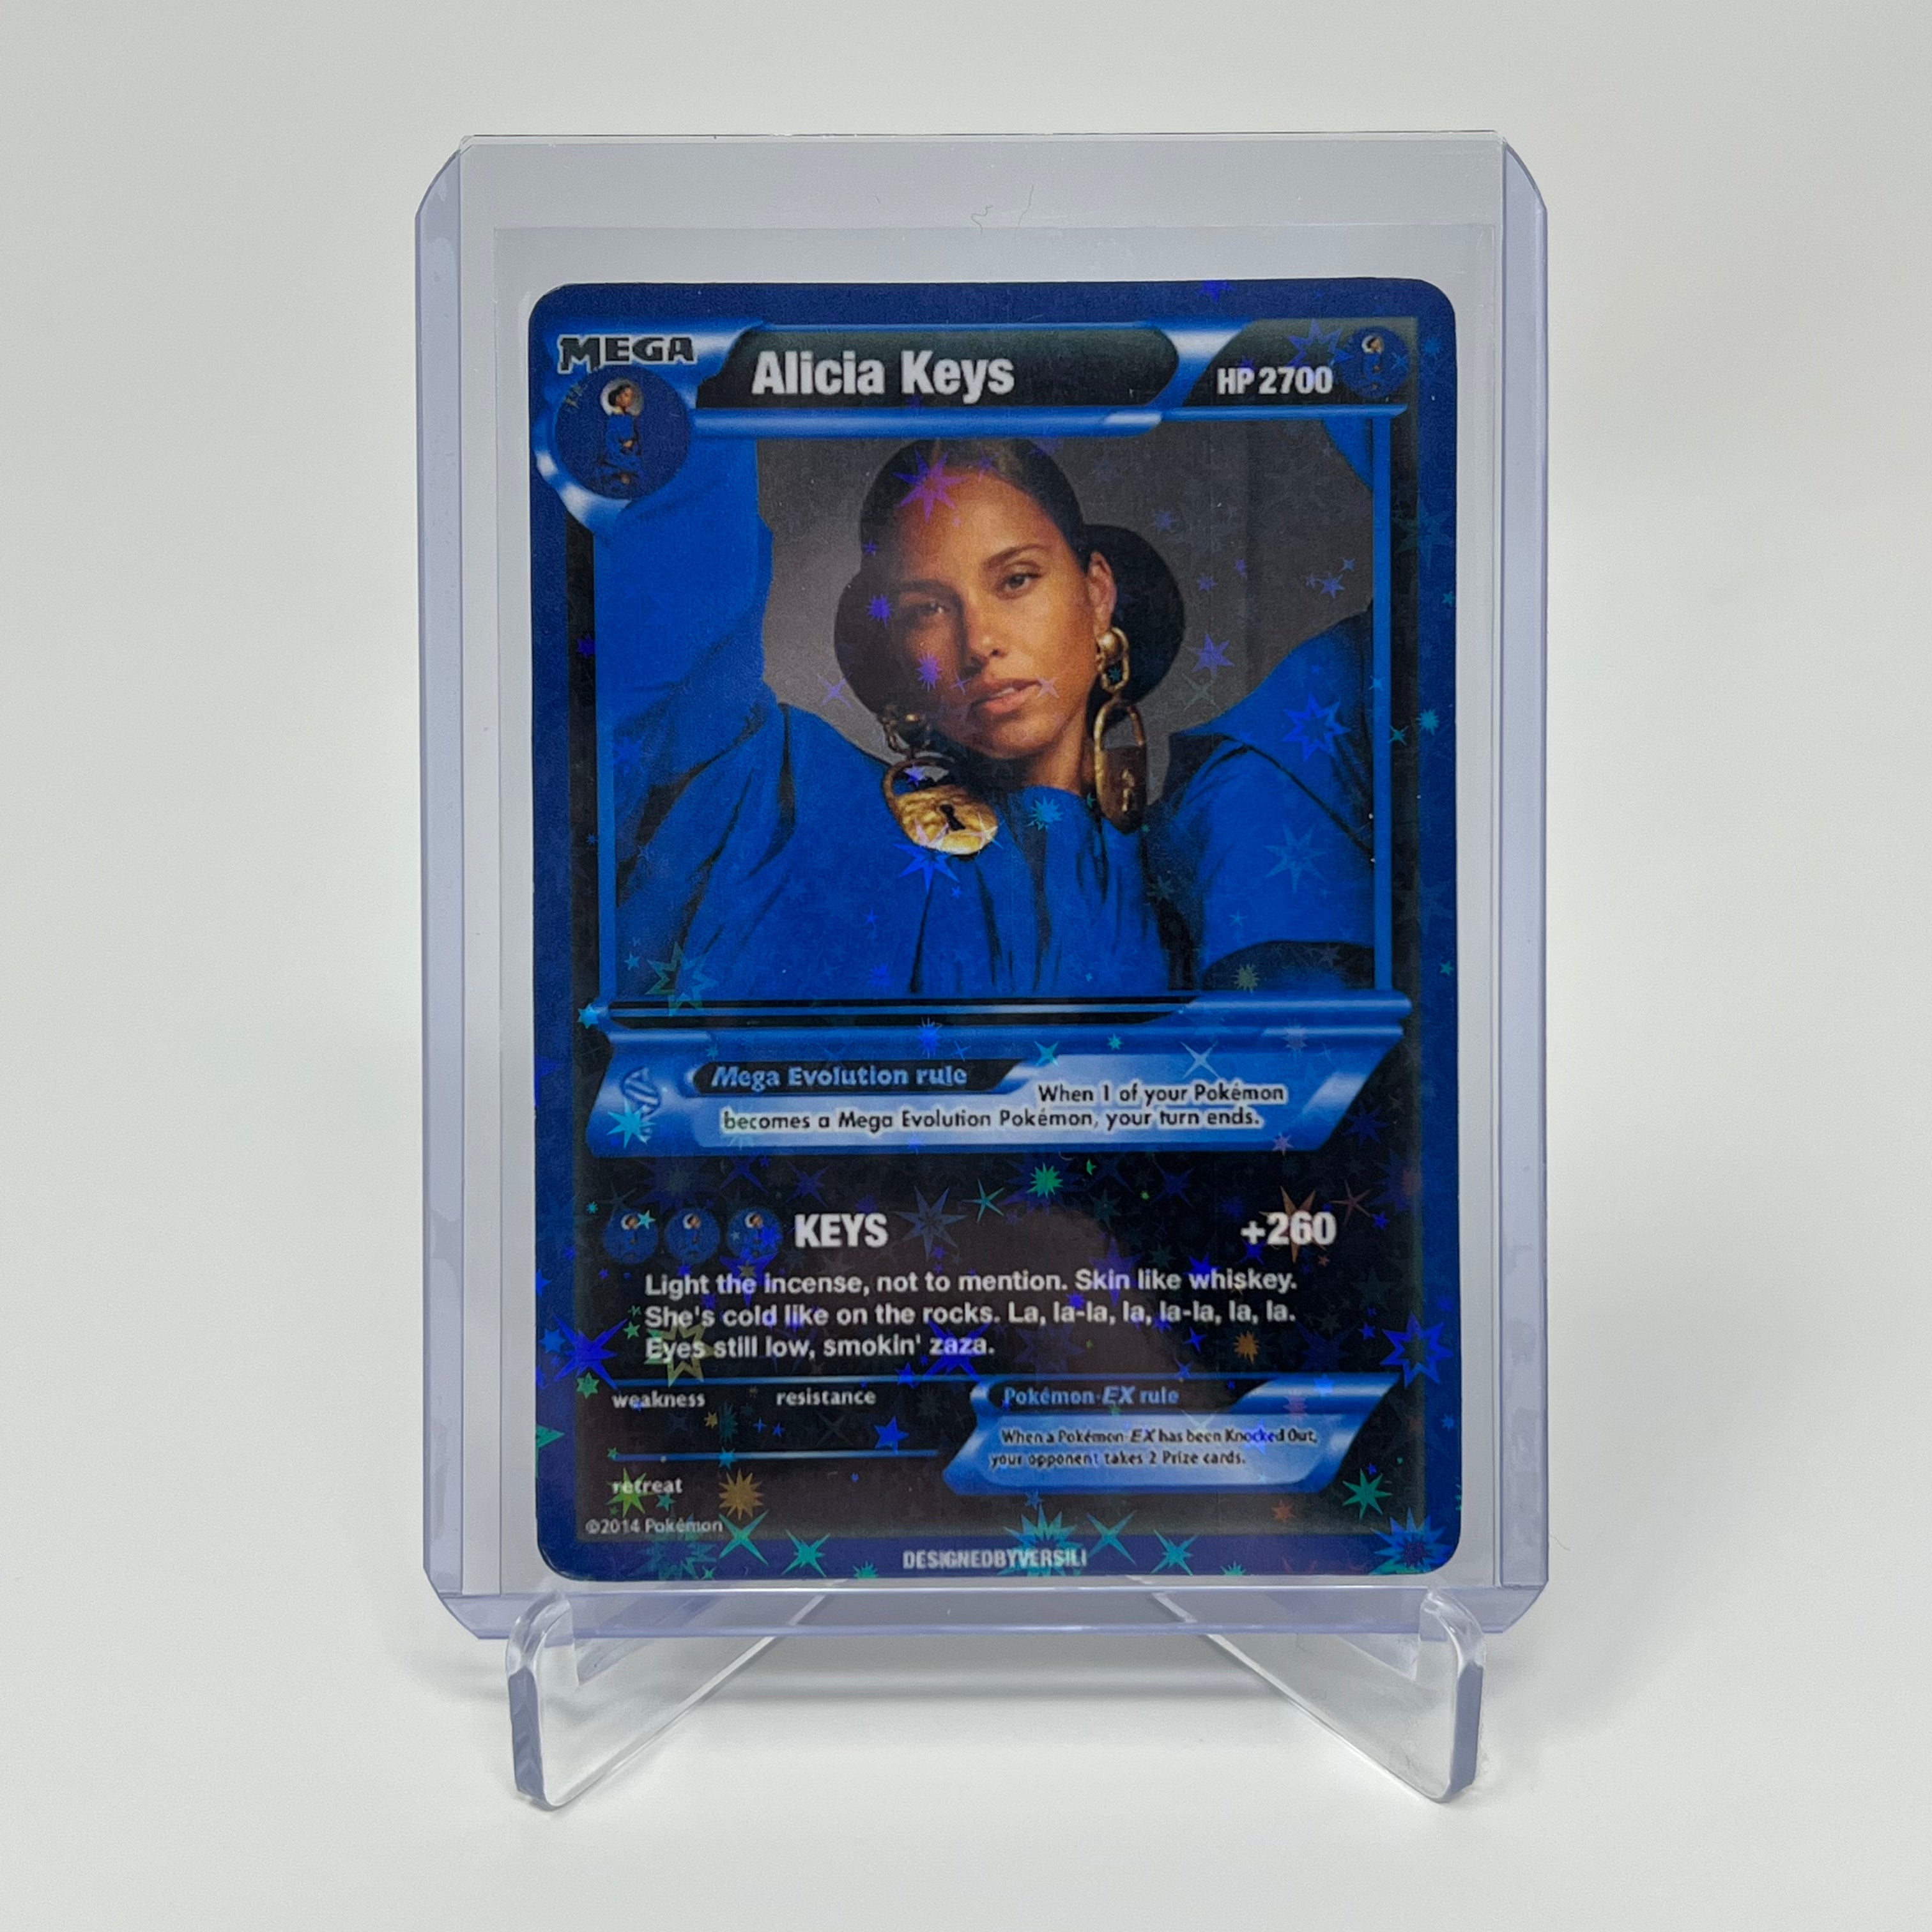 Alicia Keys Pokémon Card